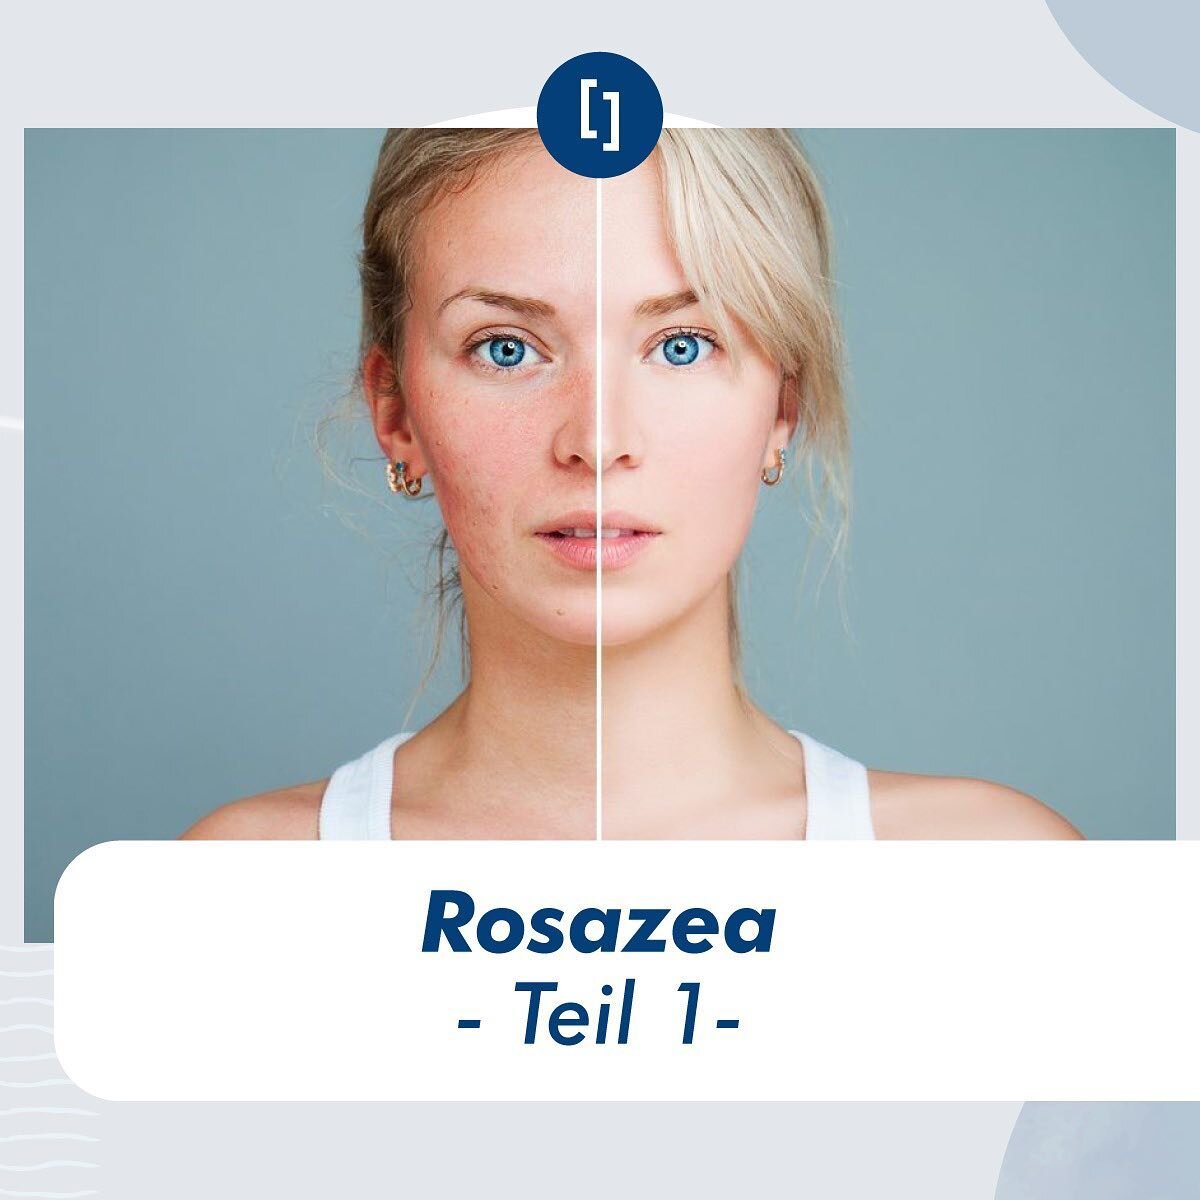 Rosazea &ndash; Teil 1

Wird Ihre Gesichtshaut manchmal rot und Sie wissen nicht warum?
Eine der Hauptursachen f&uuml;r Gesichtsr&ouml;tungen ist Rosazea.

Die R&ouml;tung wird durch eine Erweiterung der &Auml;derchen im Gesicht verursacht. 

Die Urs